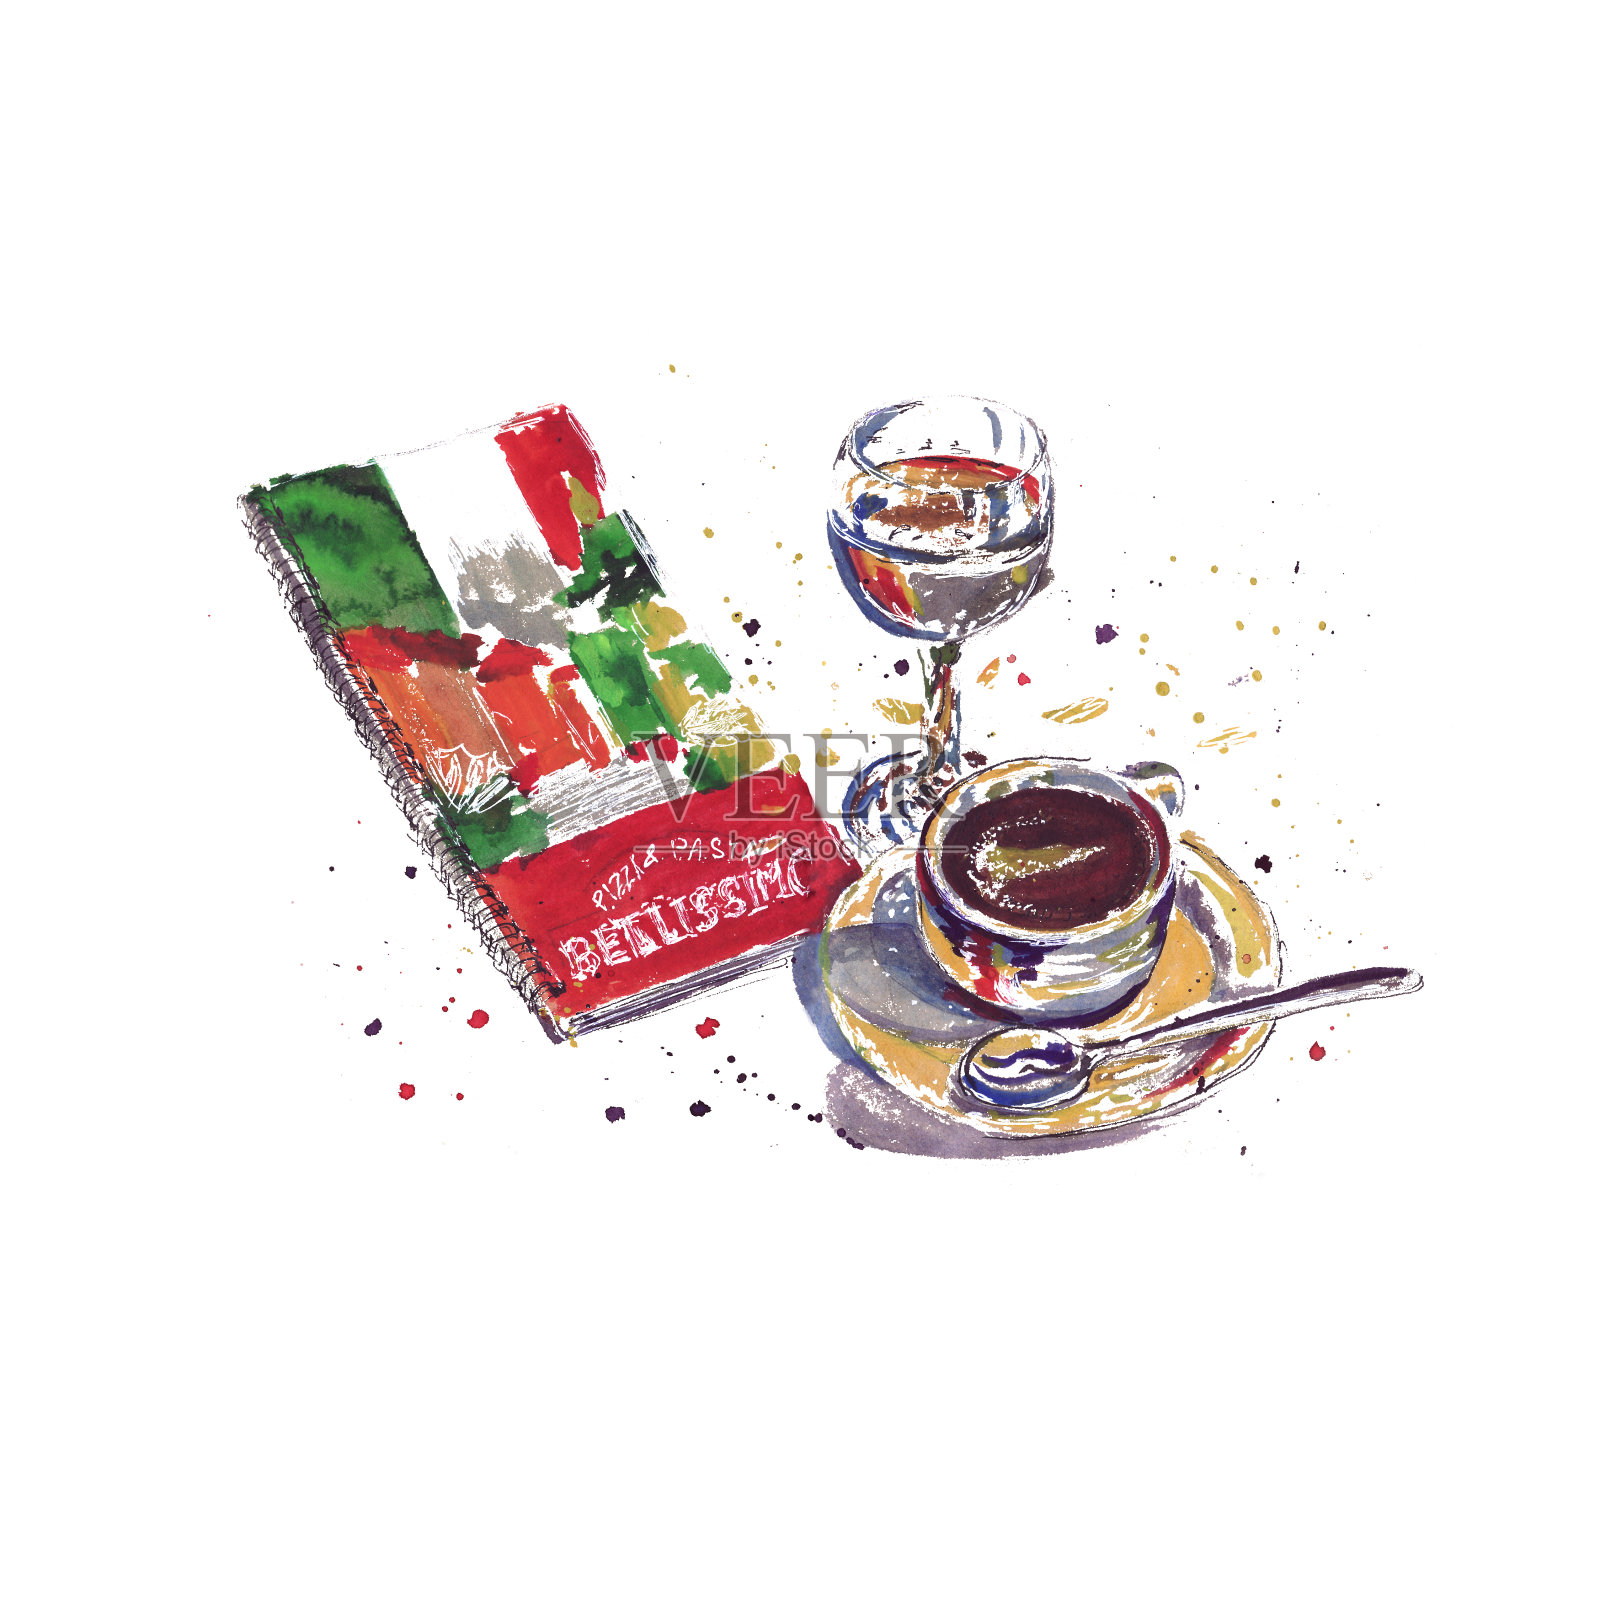 在咖啡杯，咖啡，热巧克力，华夫饼，蛋糕，饼干的斑点水彩画素描。插画图片素材